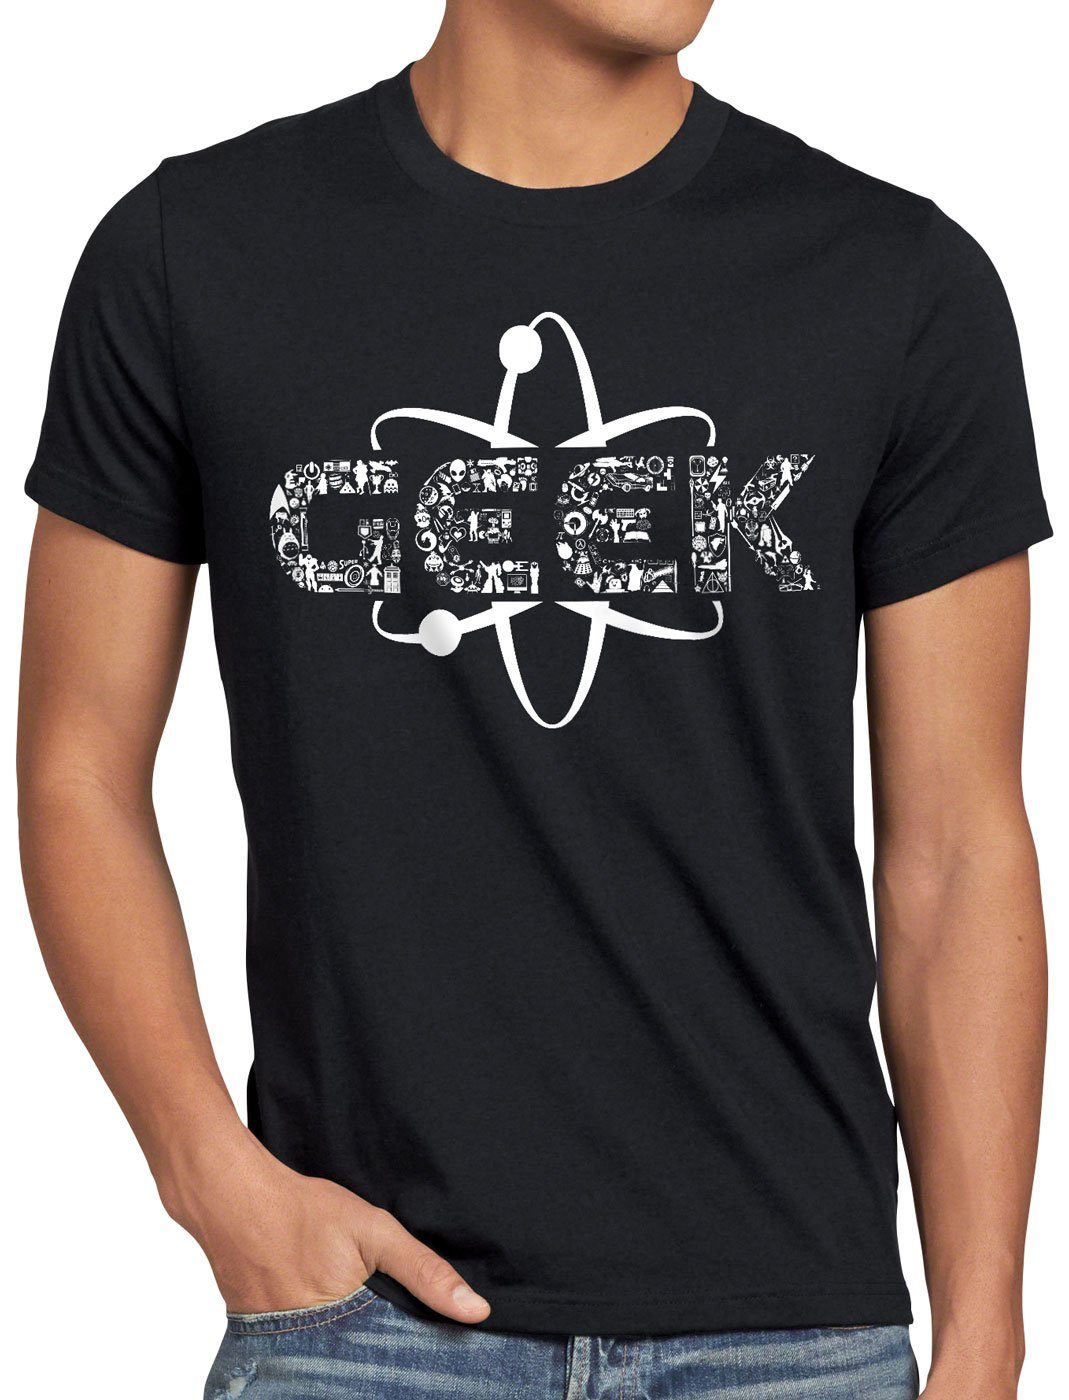 schwarz Print-Shirt Herren Geek T-Shirt Gamer Videospiel style3 Nerd